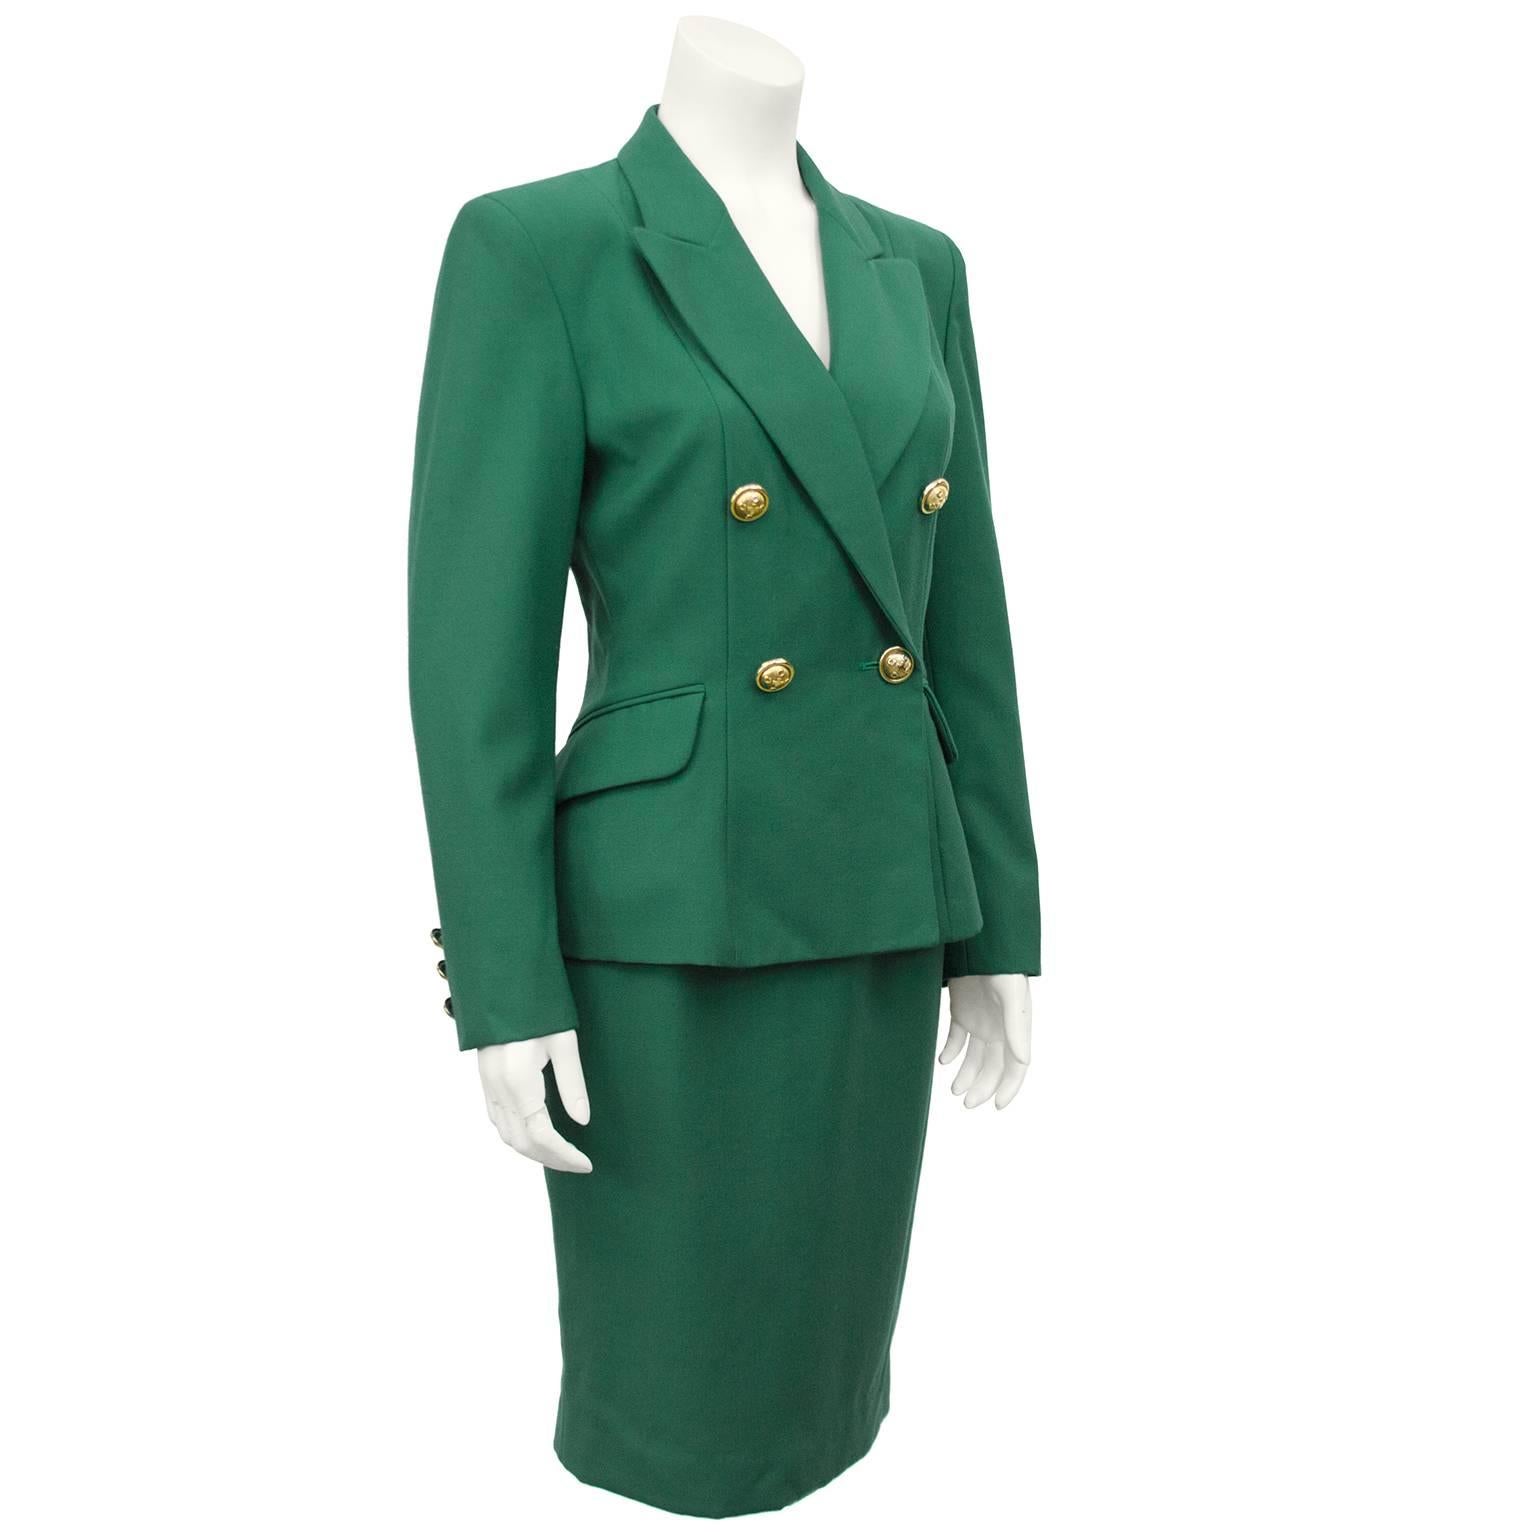 Costume jupe vert Kelly en laine Moschino Cheap and Chic datant du début des années 1980. Veste à double boutonnage avec de gros boutons dorés détaillés avec croix et logos c et une taille ajustée. Jupe crayon à taille haute. Peut être porté